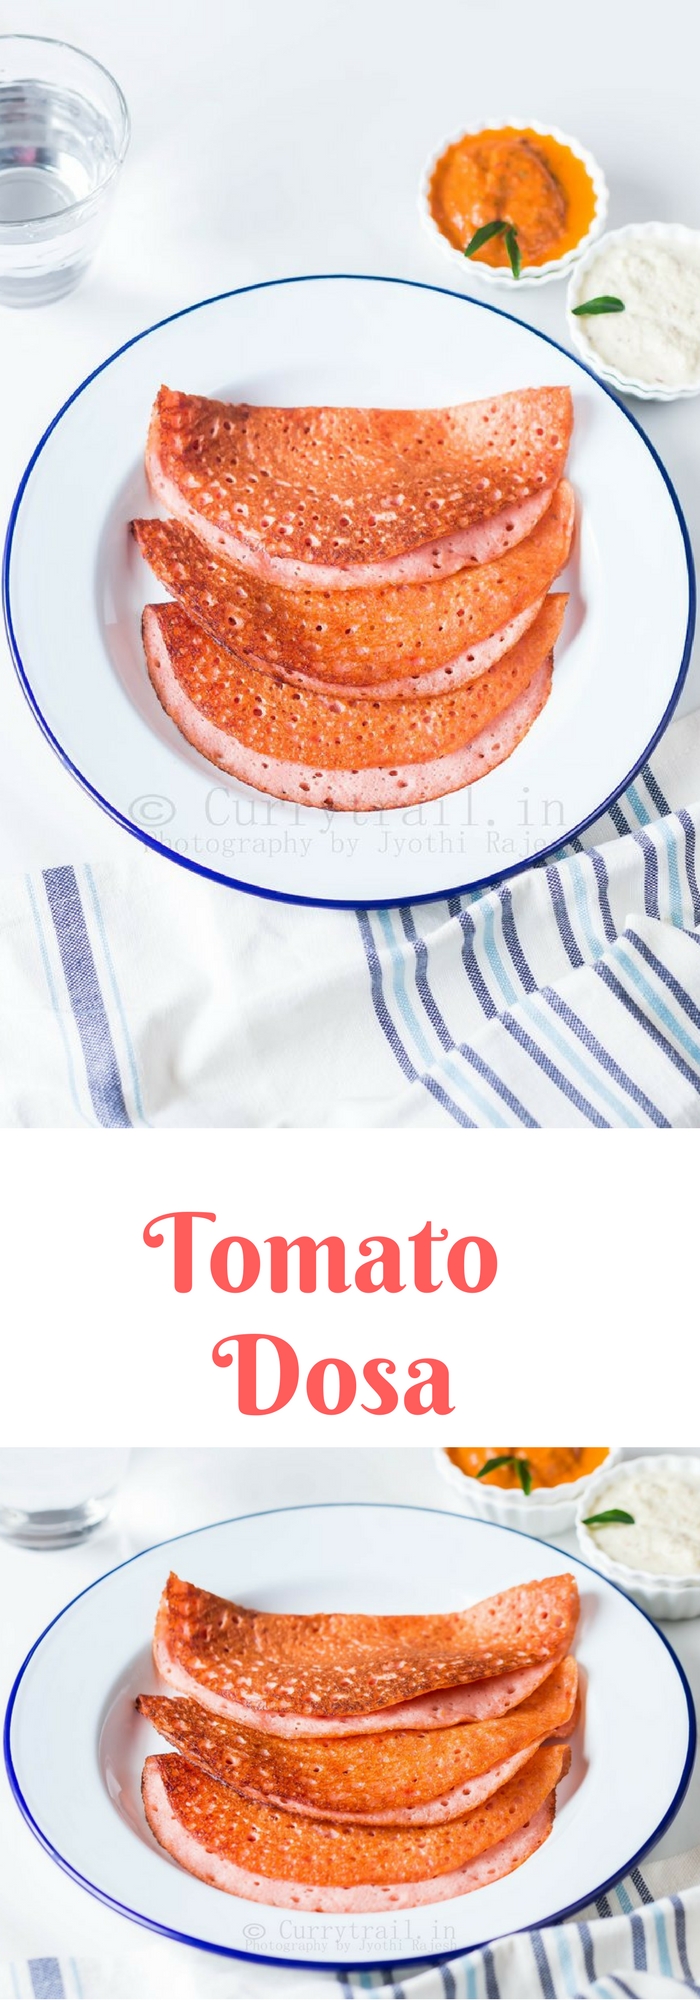 Tomato Dosa